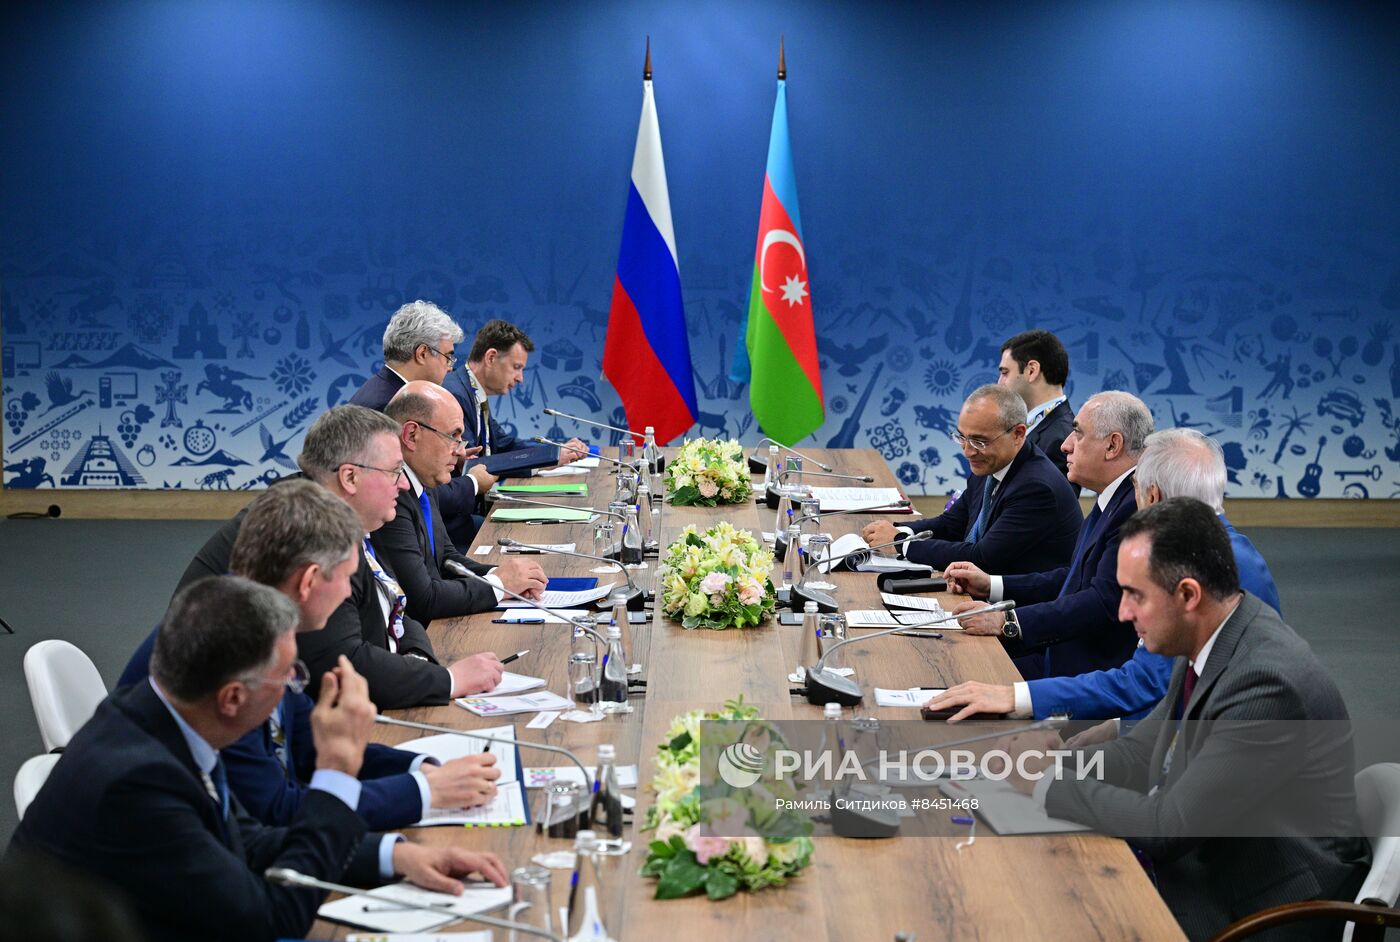 Евразийский межправительственный совет. Двусторонние встречи